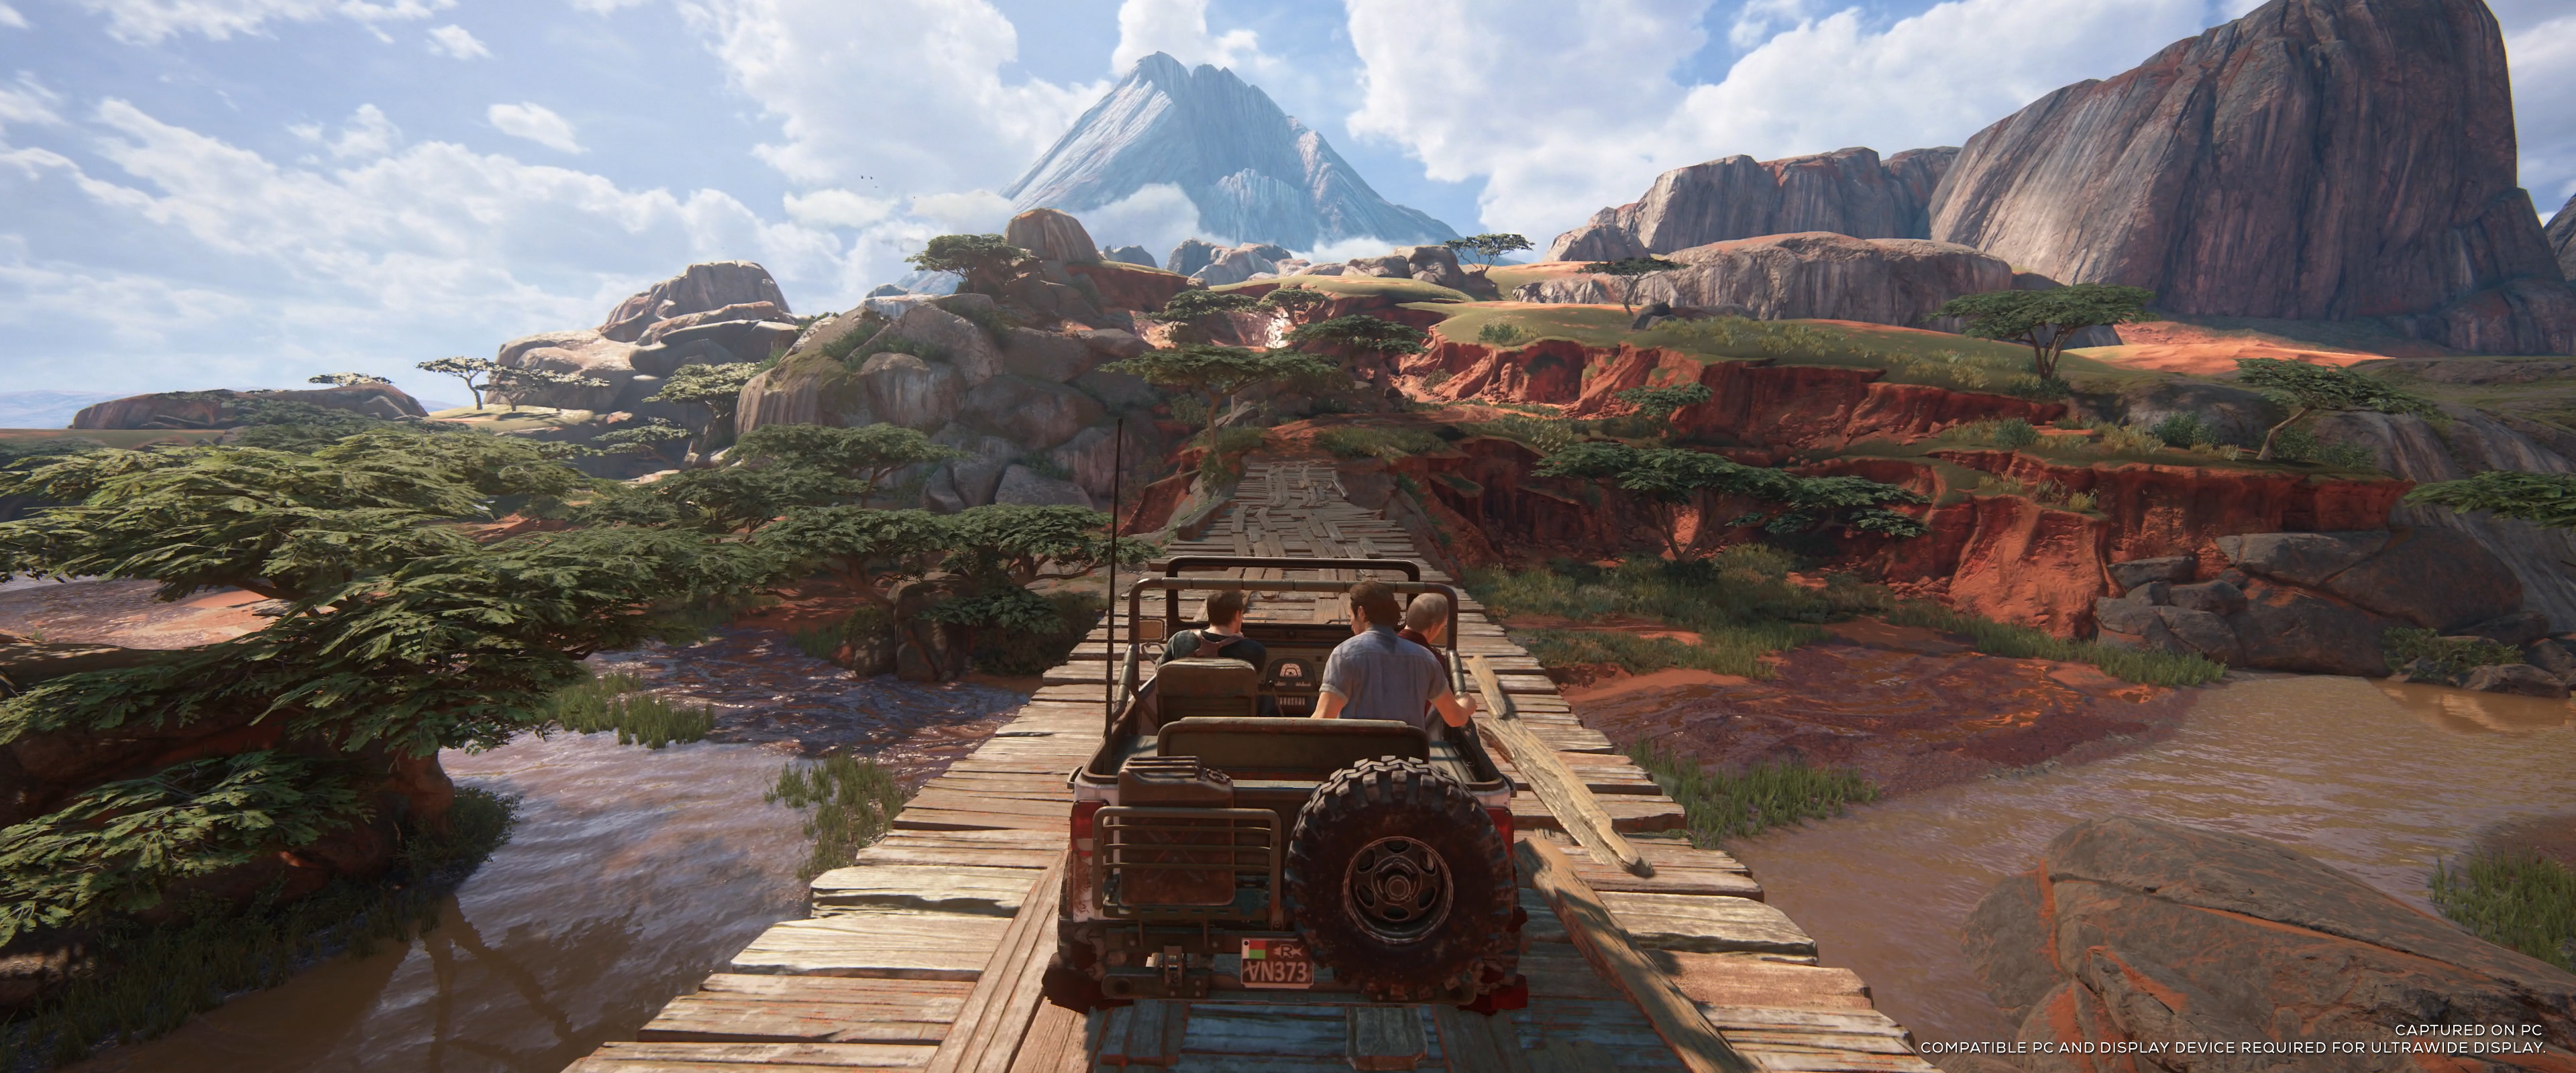 Au premier plan, une jeep fonce sur un pont en bois, avec un paysage luxuriant qui s'étend à perte de vue. PC et écran compatible requis pour l'affichage en ultra large.